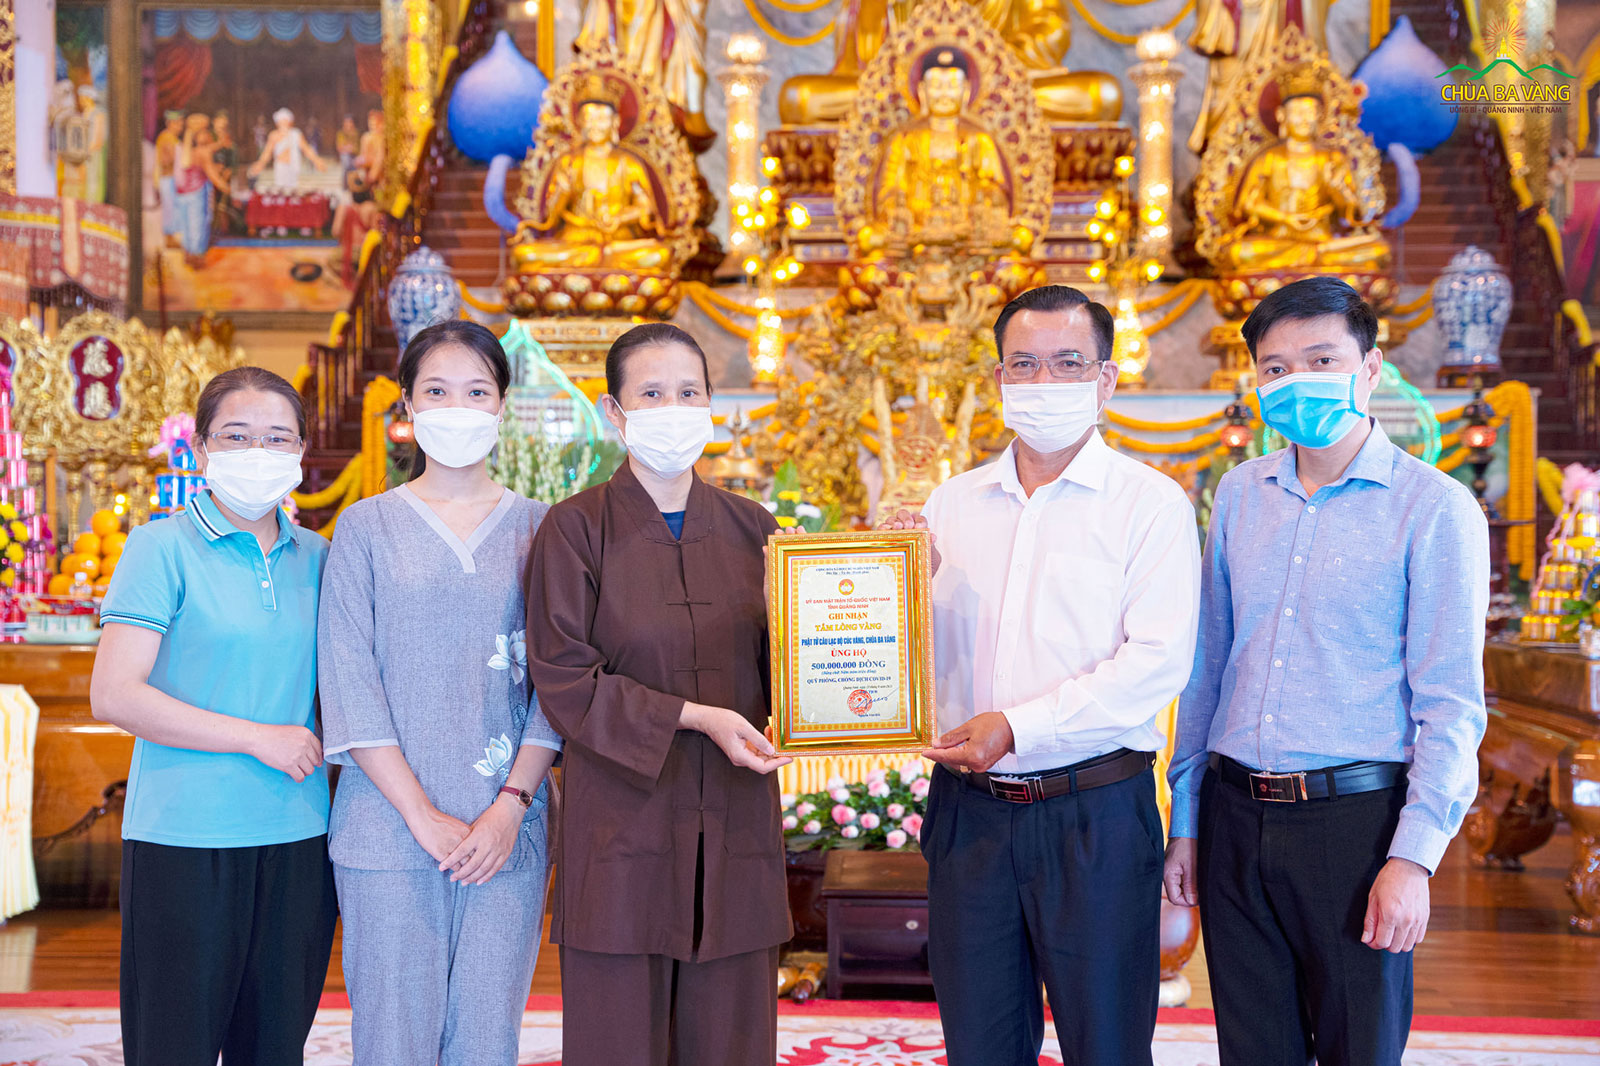 Đại diện Phật tử chùa Ba Vàng - bà Phạm Thị Yến đón nhận bằng ghi nhận 